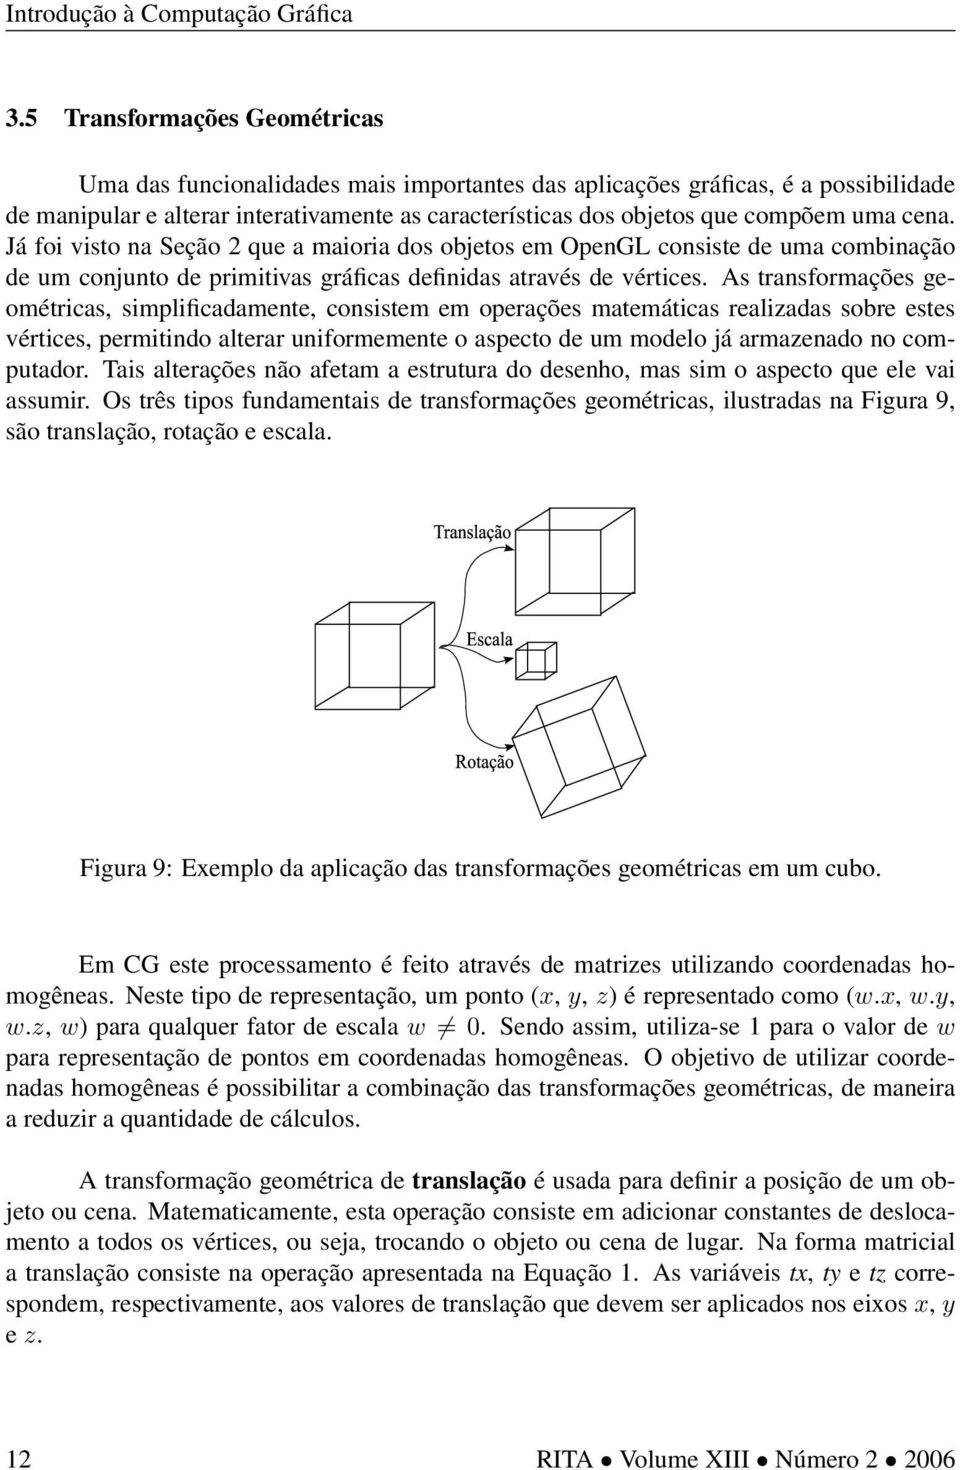 As transformações geométricas, simplificadamente, consistem em operações matemáticas realizadas sobre estes vértices, permitindo alterar uniformemente o aspecto de um modelo já armazenado no